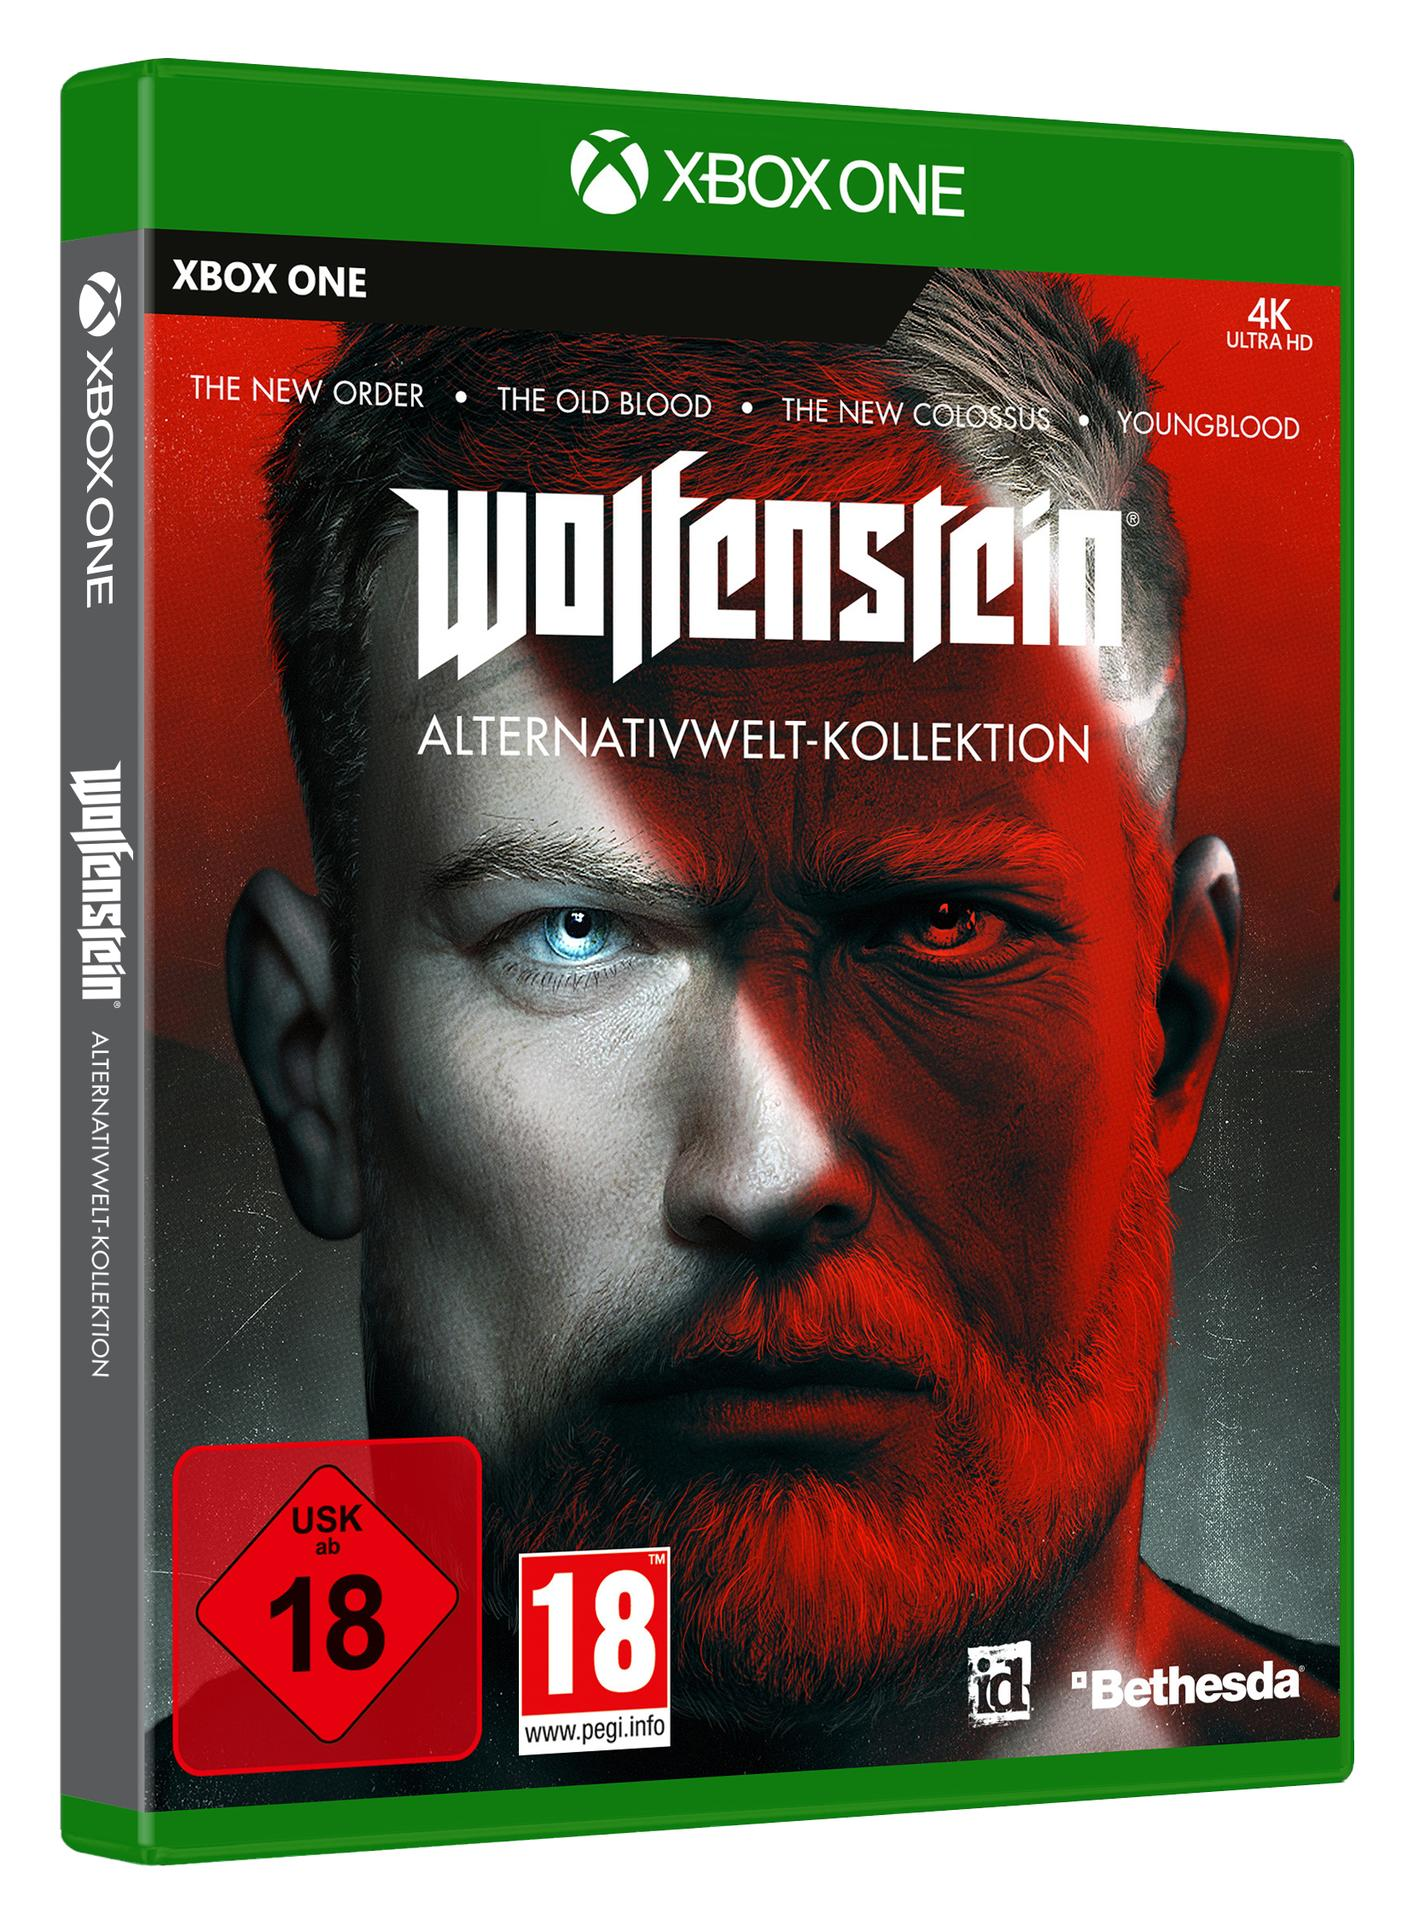 [Xbox One] Alternativwelt-Kollektion Wolfenstein -